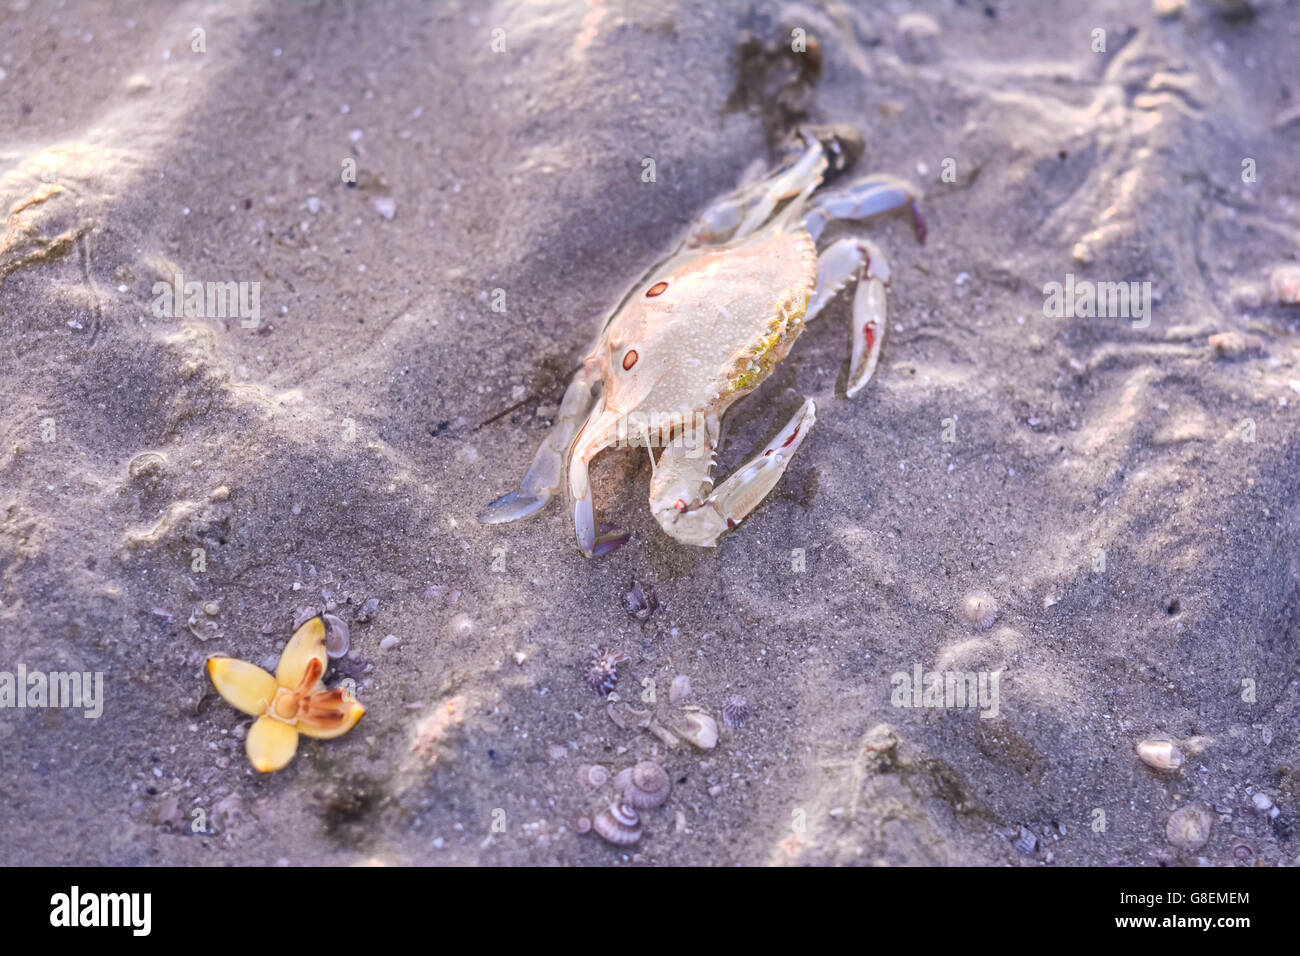 Three spot swimming crab on the beach, Portunus sanguinolentus Stock Photo